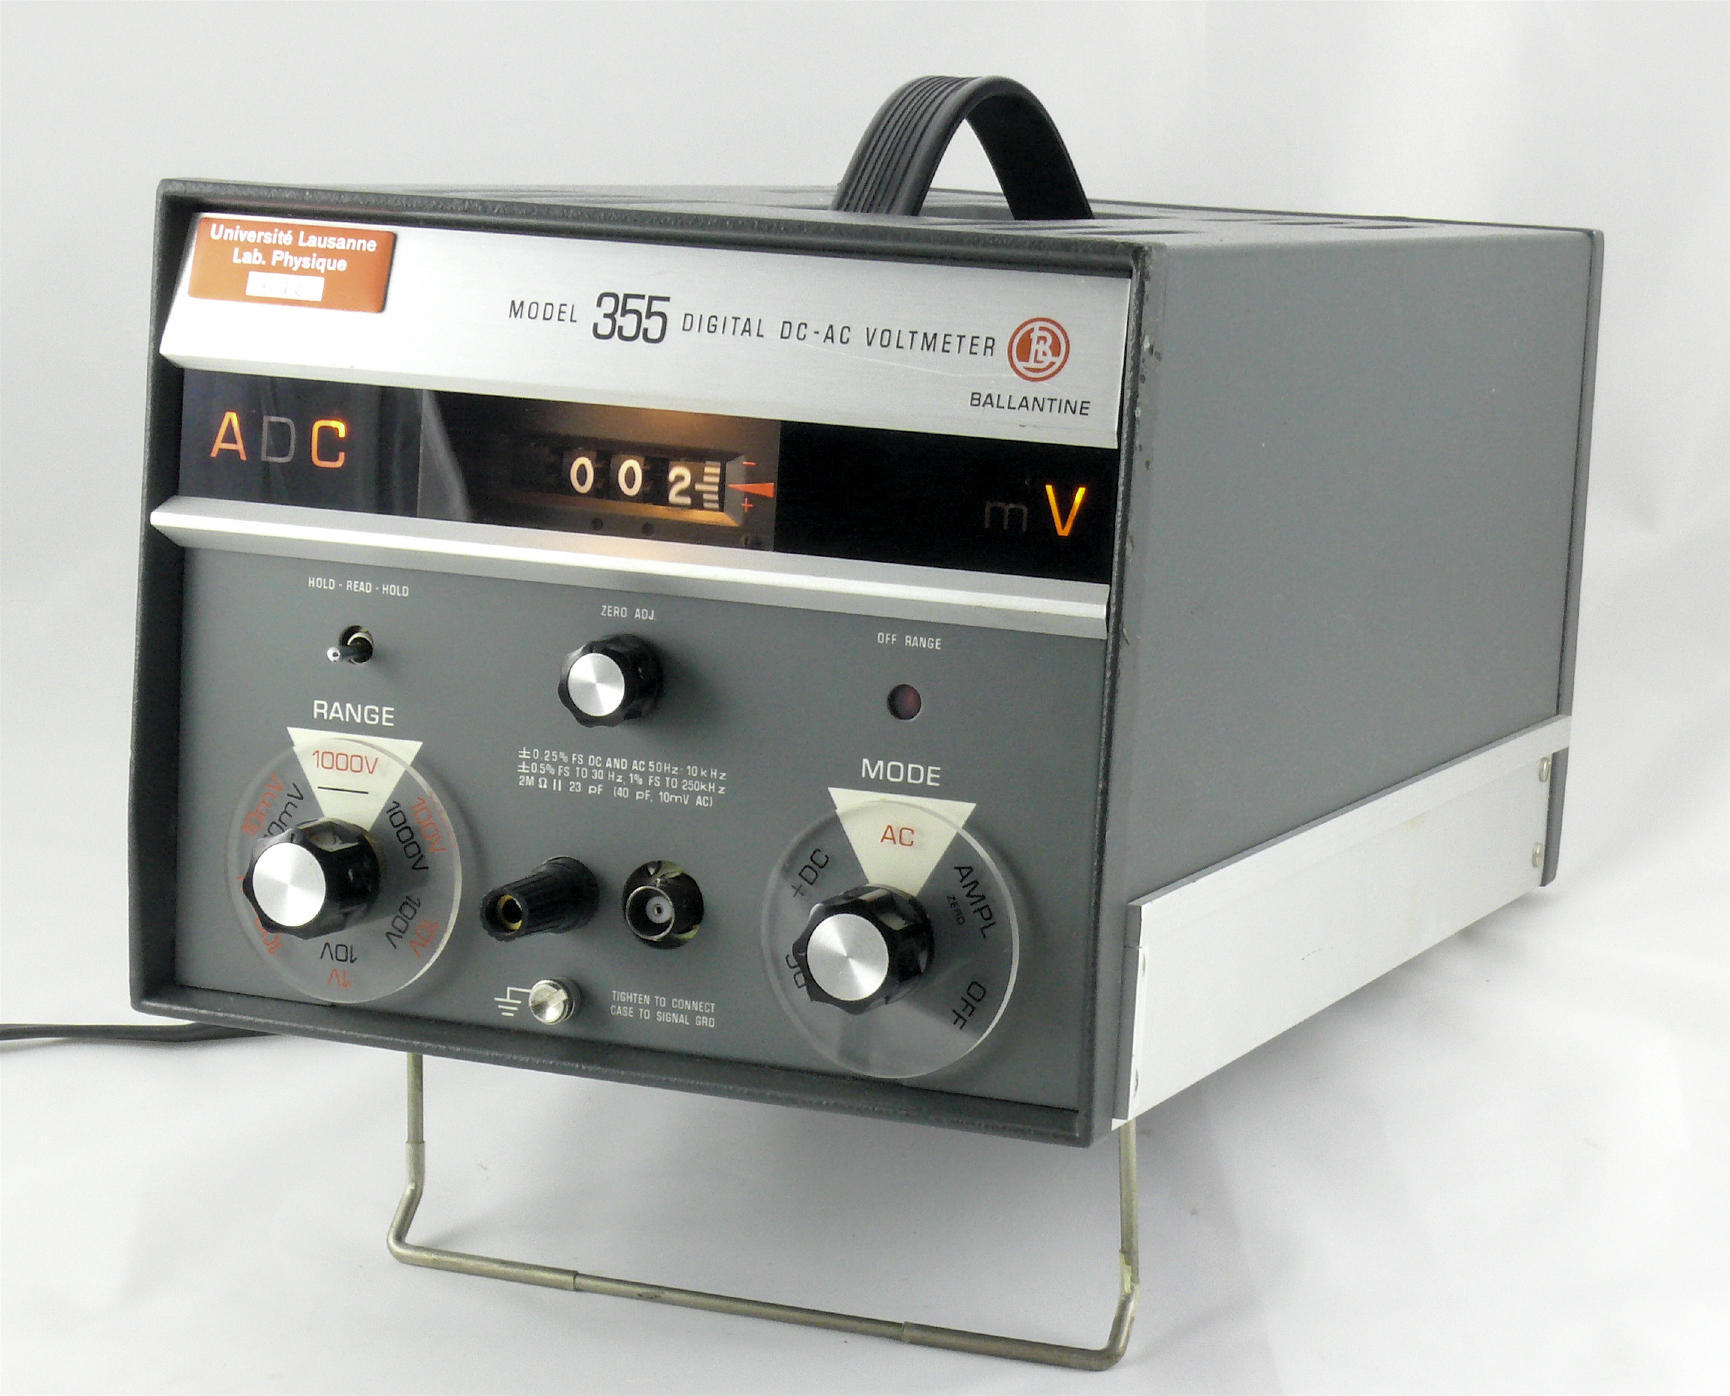 Voltmètre à affichage numérique
(Ballantine 355)